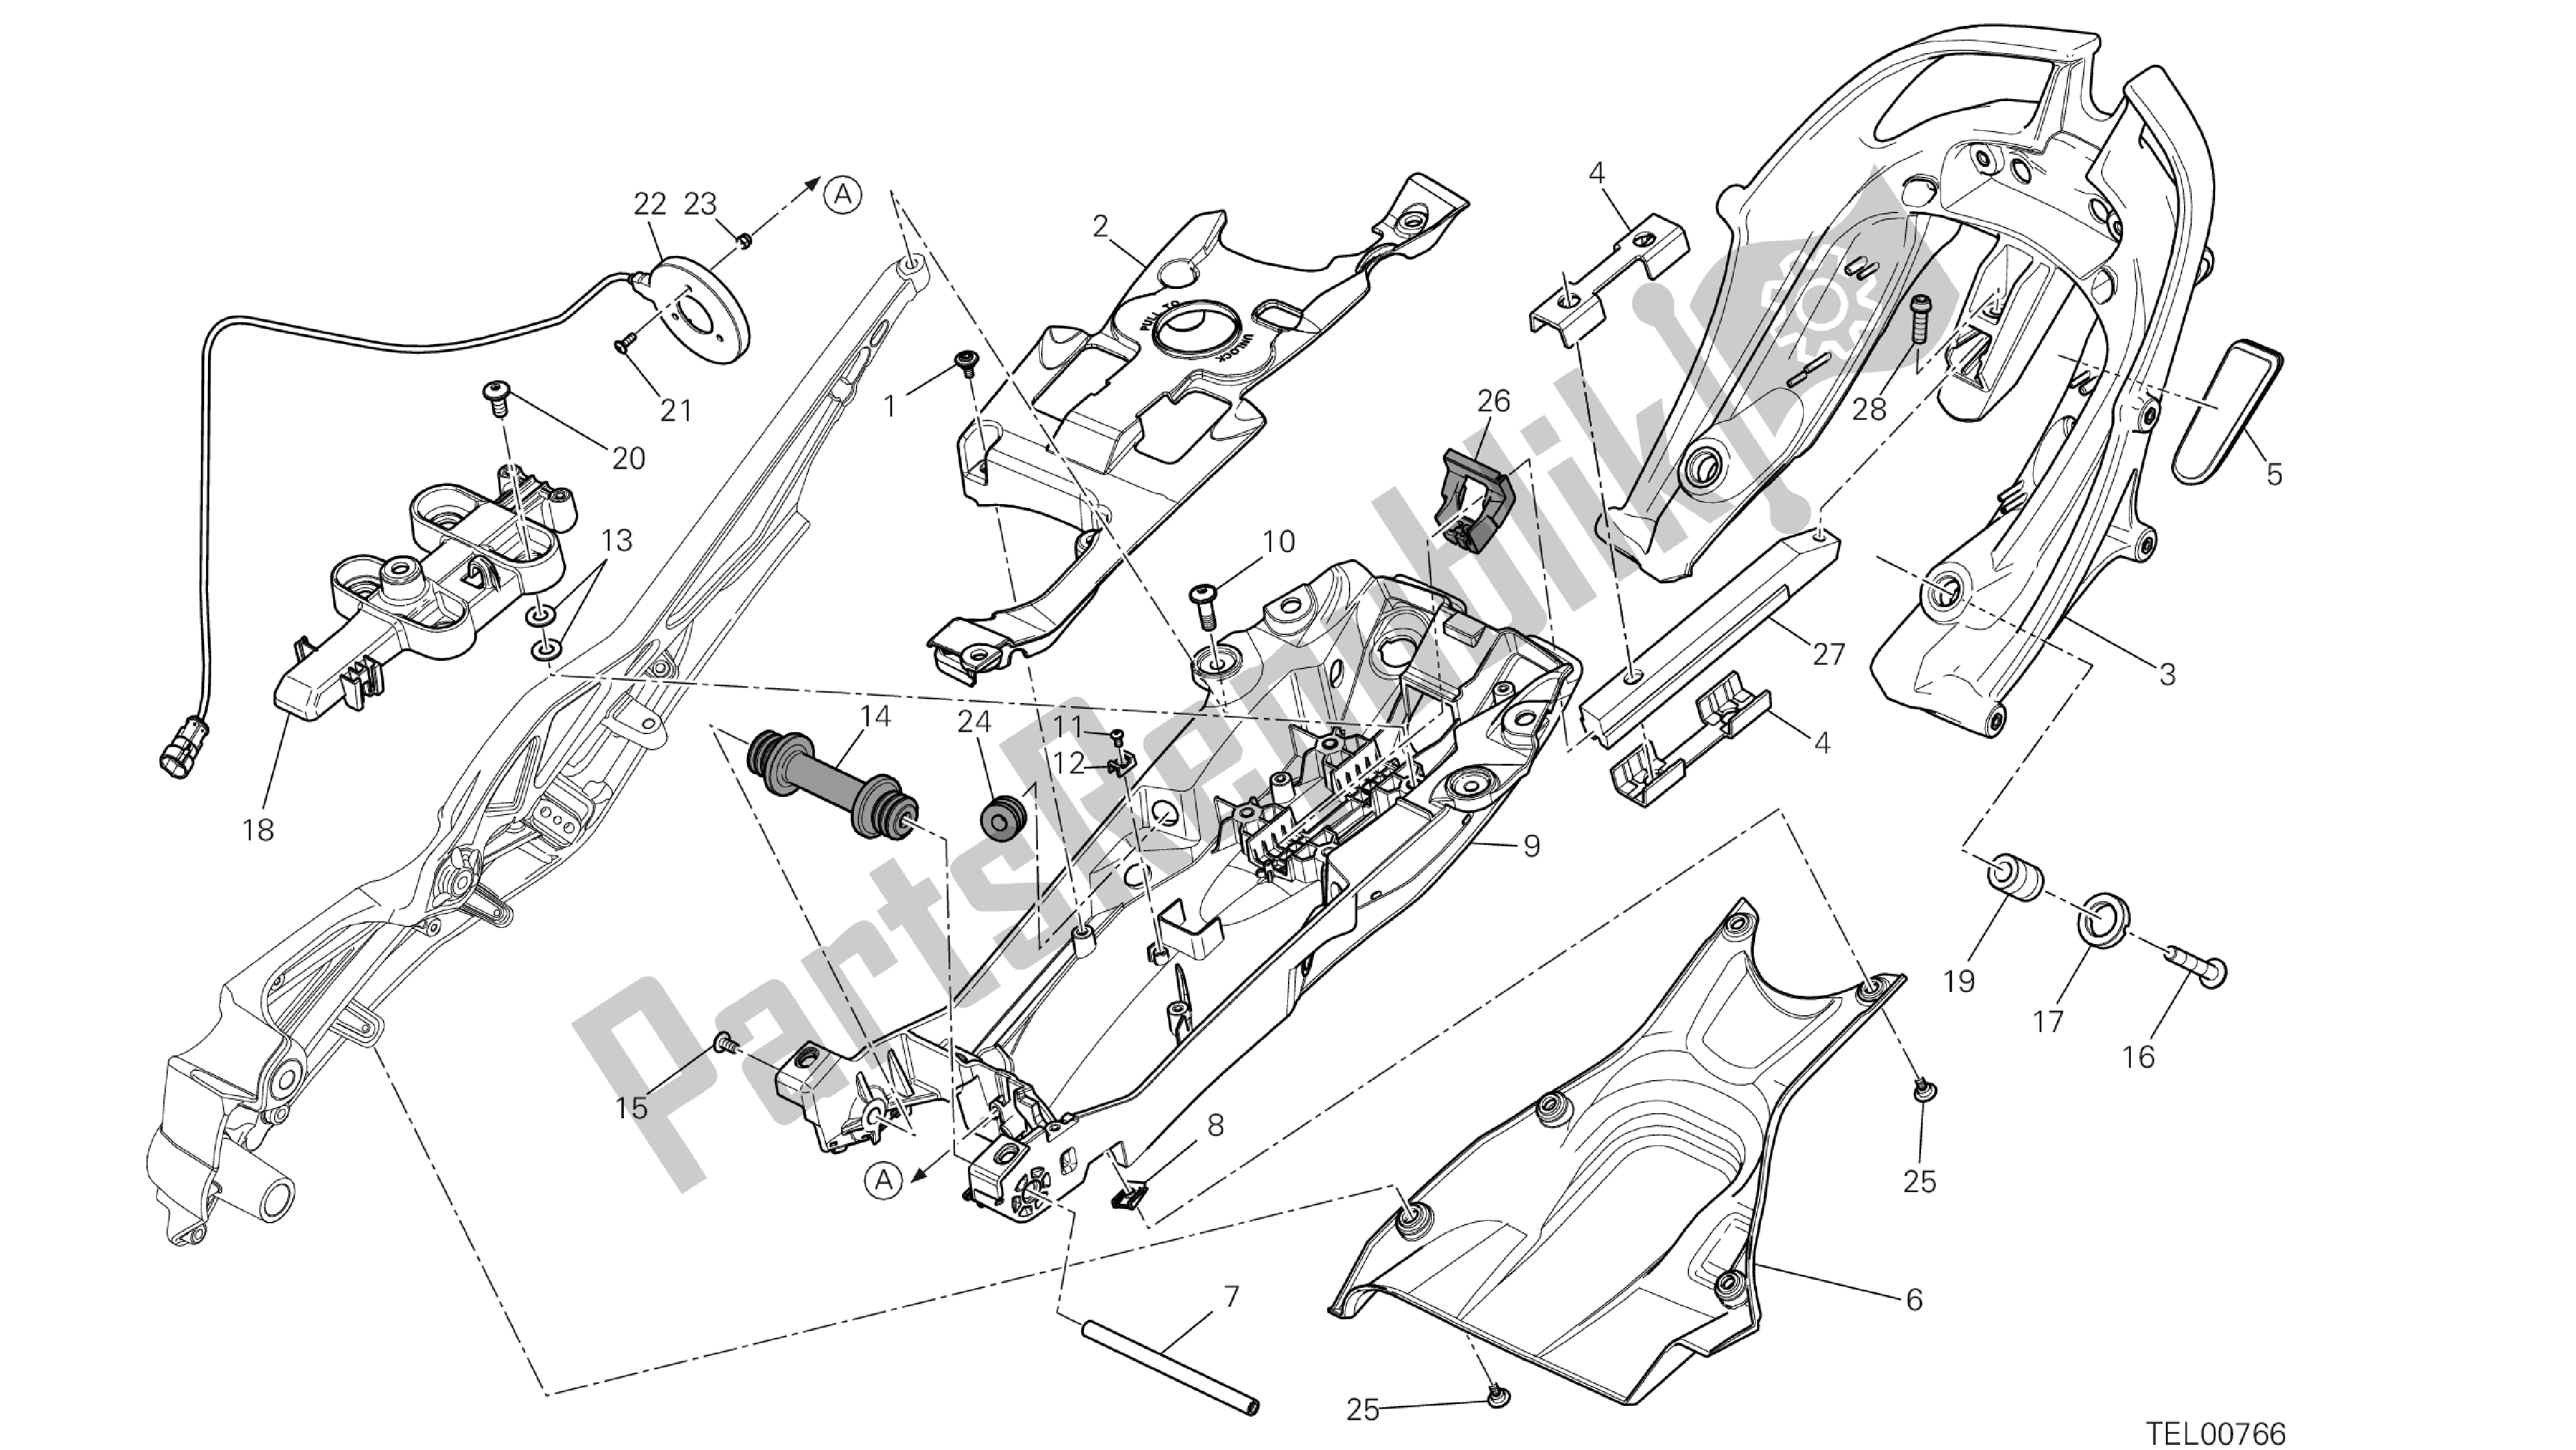 Alle onderdelen voor de Tekening 027 - Achterframe Comp. [mod: Dvlt; Xst: Aus, Eu R, Fr A, J Ap] Groep Fr Ame van de Ducati Diavel Strada 1200 2013